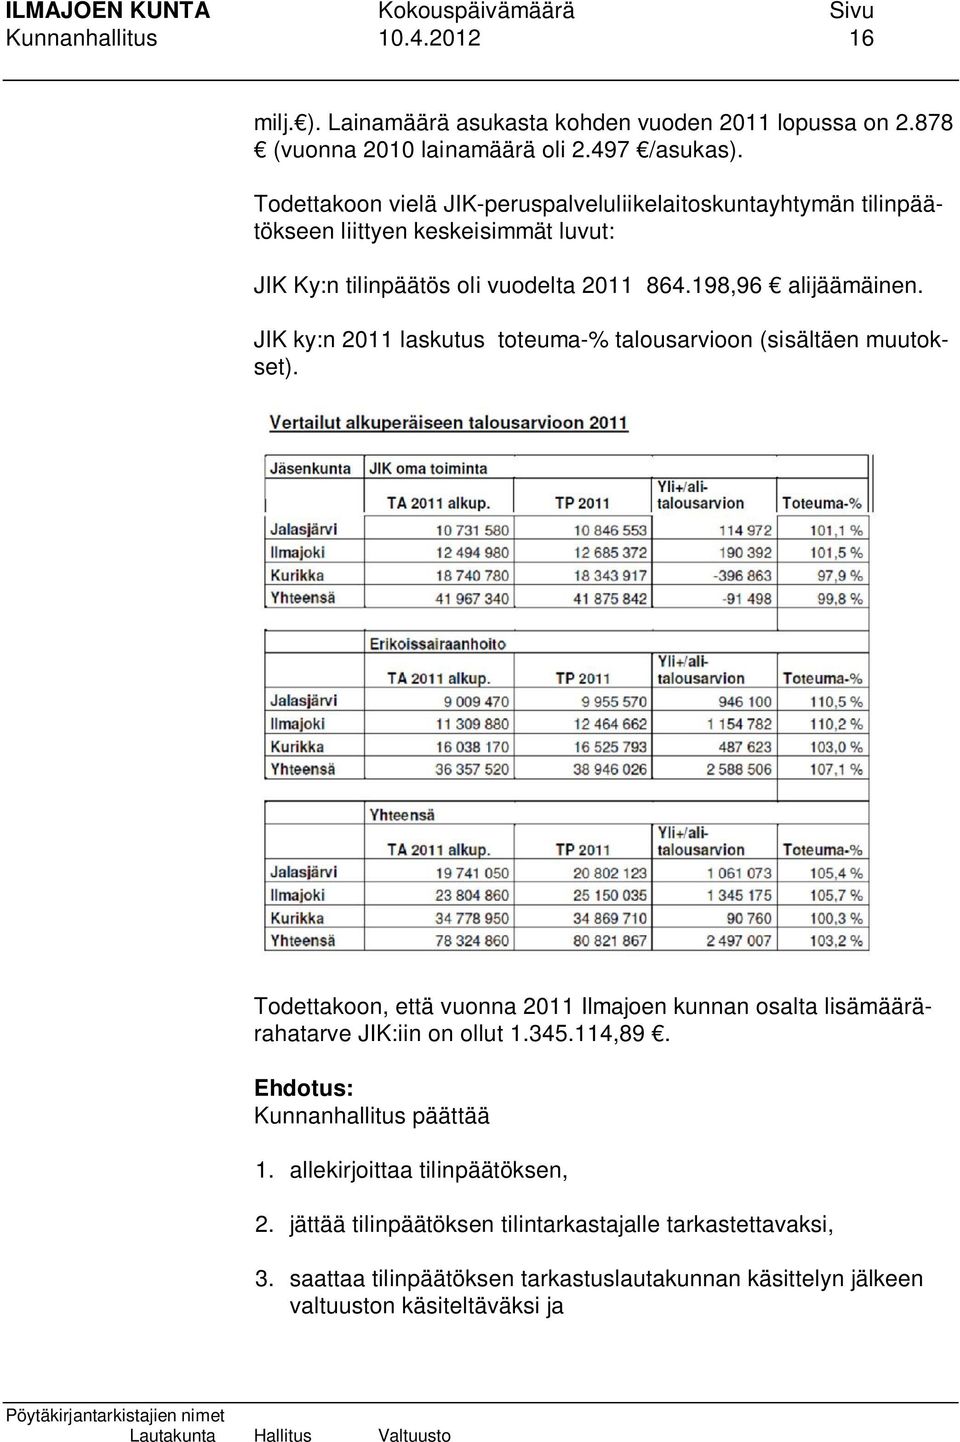 JIK ky:n 2011 laskutus toteuma-% talousarvioon (sisältäen muutokset). Todettakoon, että vuonna 2011 Ilmajoen kunnan osalta lisämäärärahatarve JIK:iin on ollut 1.345.114,89.